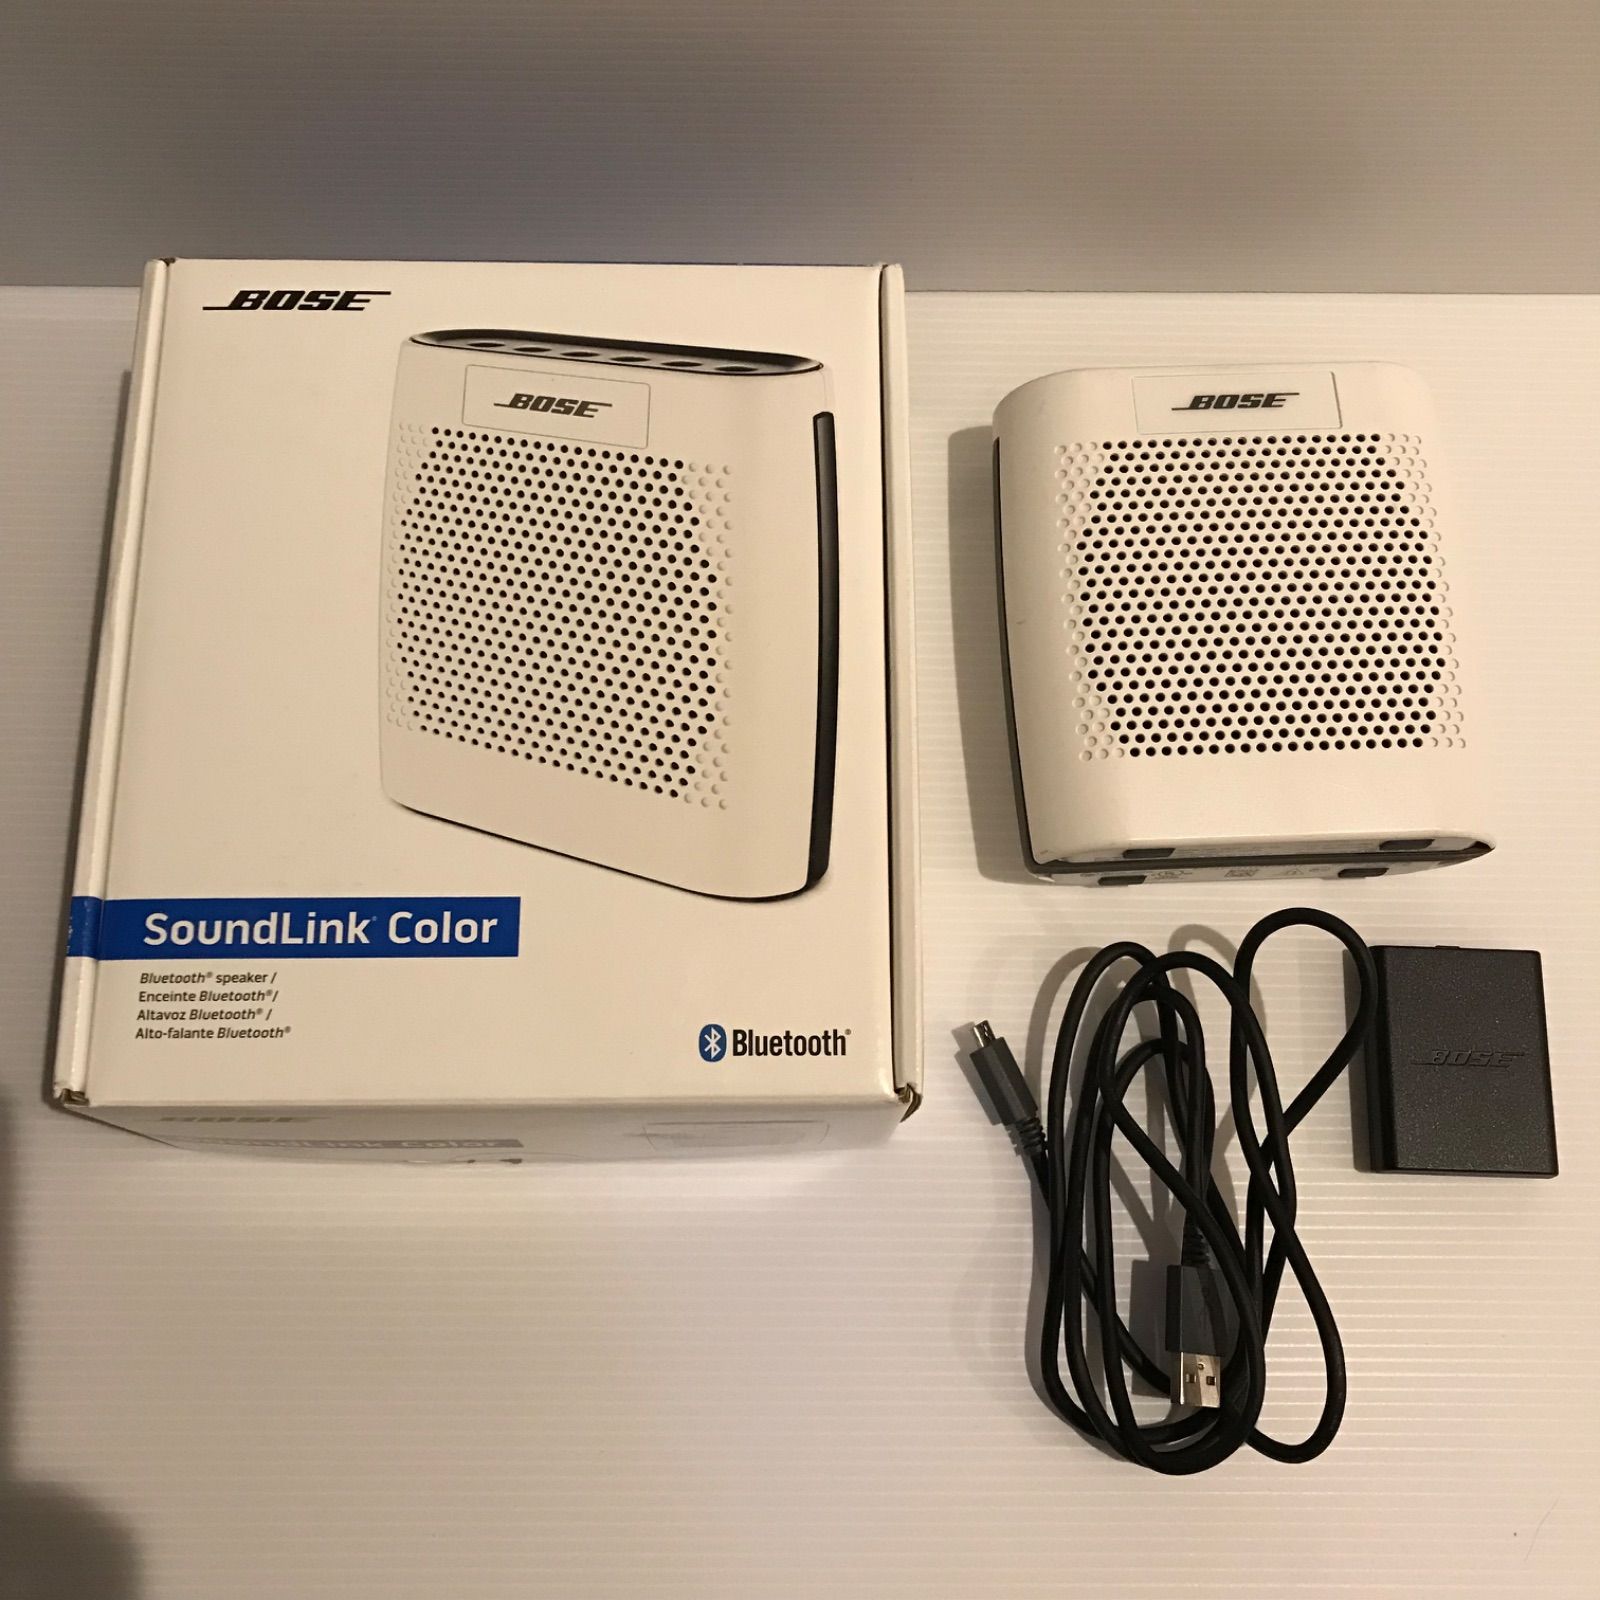 国内配送 BOSE Soundlink color (model:415859) Bluetooth speaker 8722円 オーディオ機器 